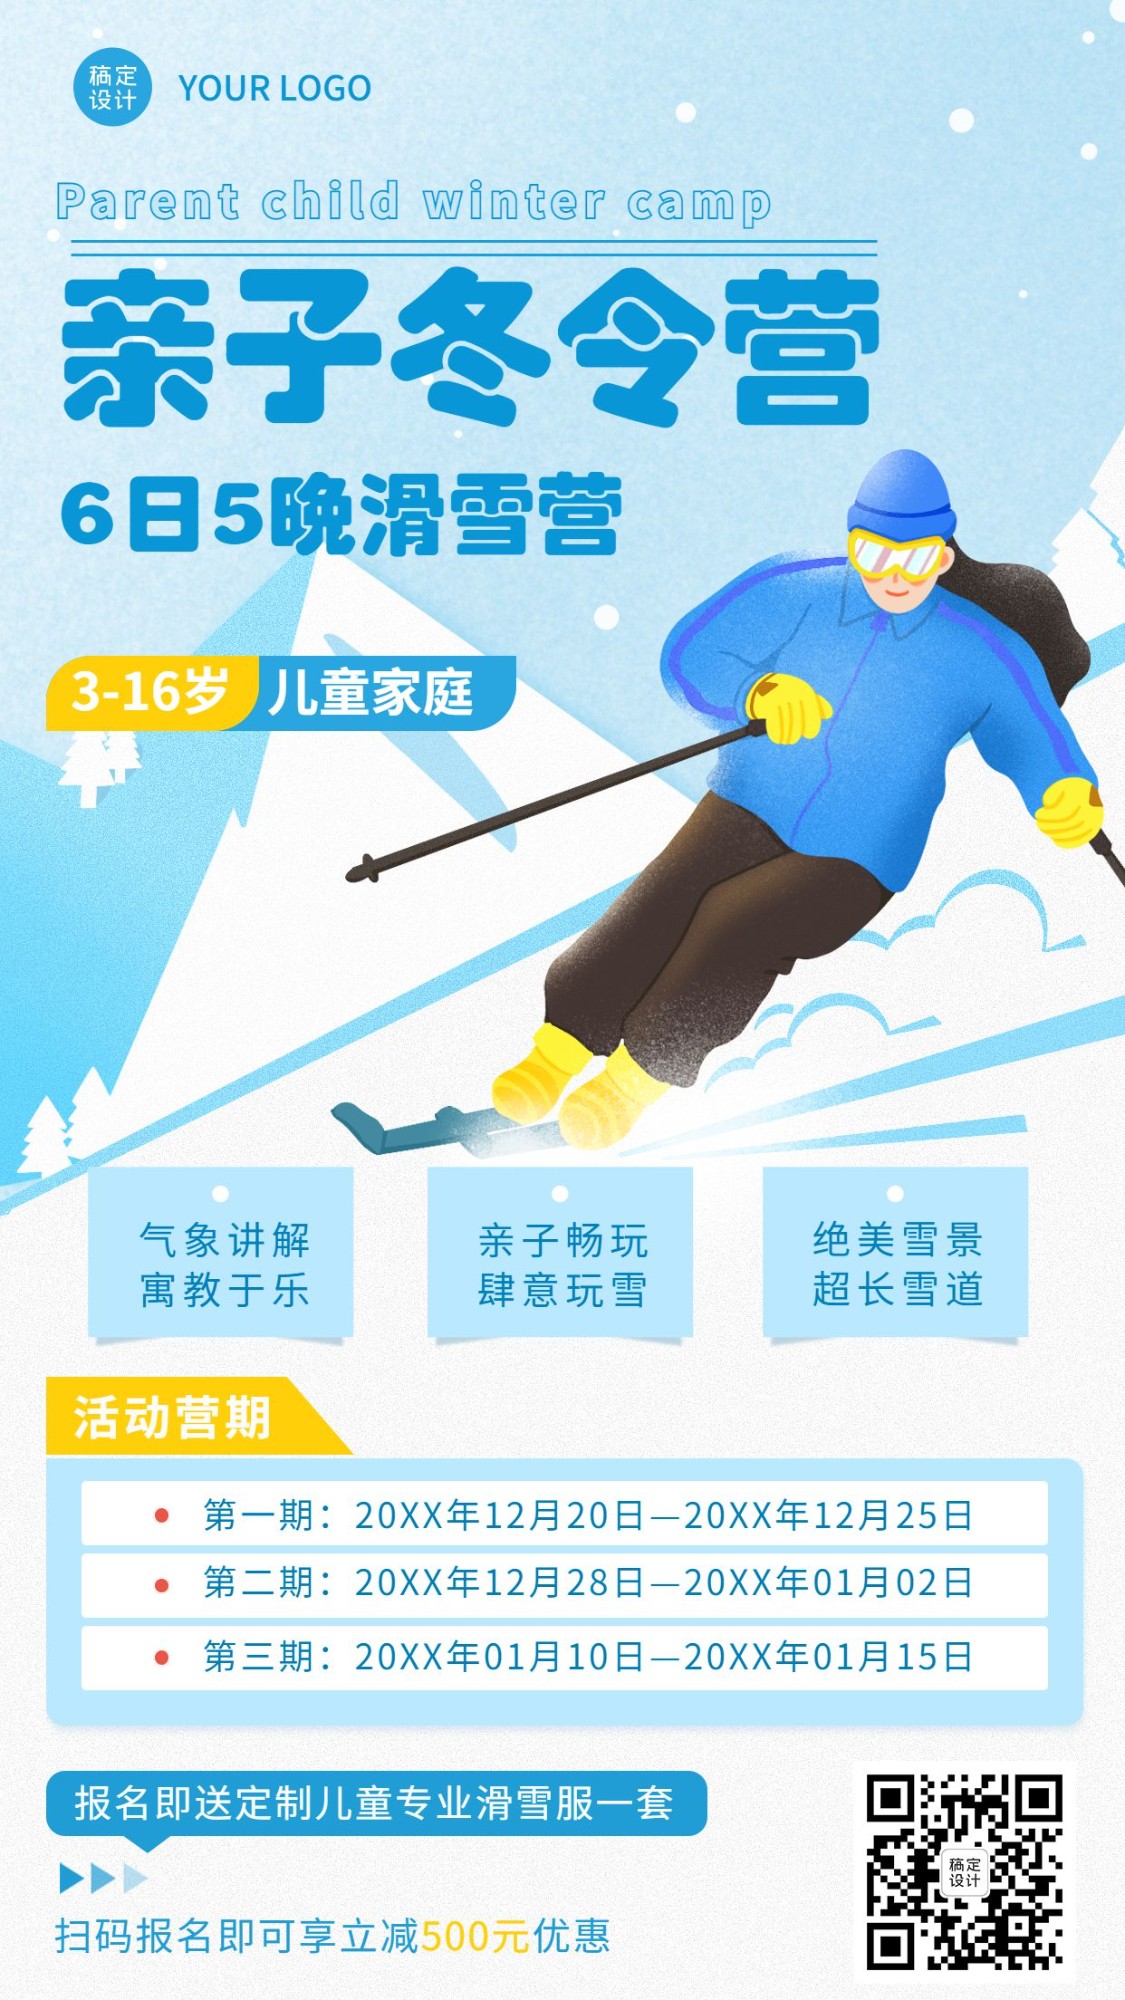 亲子滑雪冬令营课程招生竖版海报预览效果